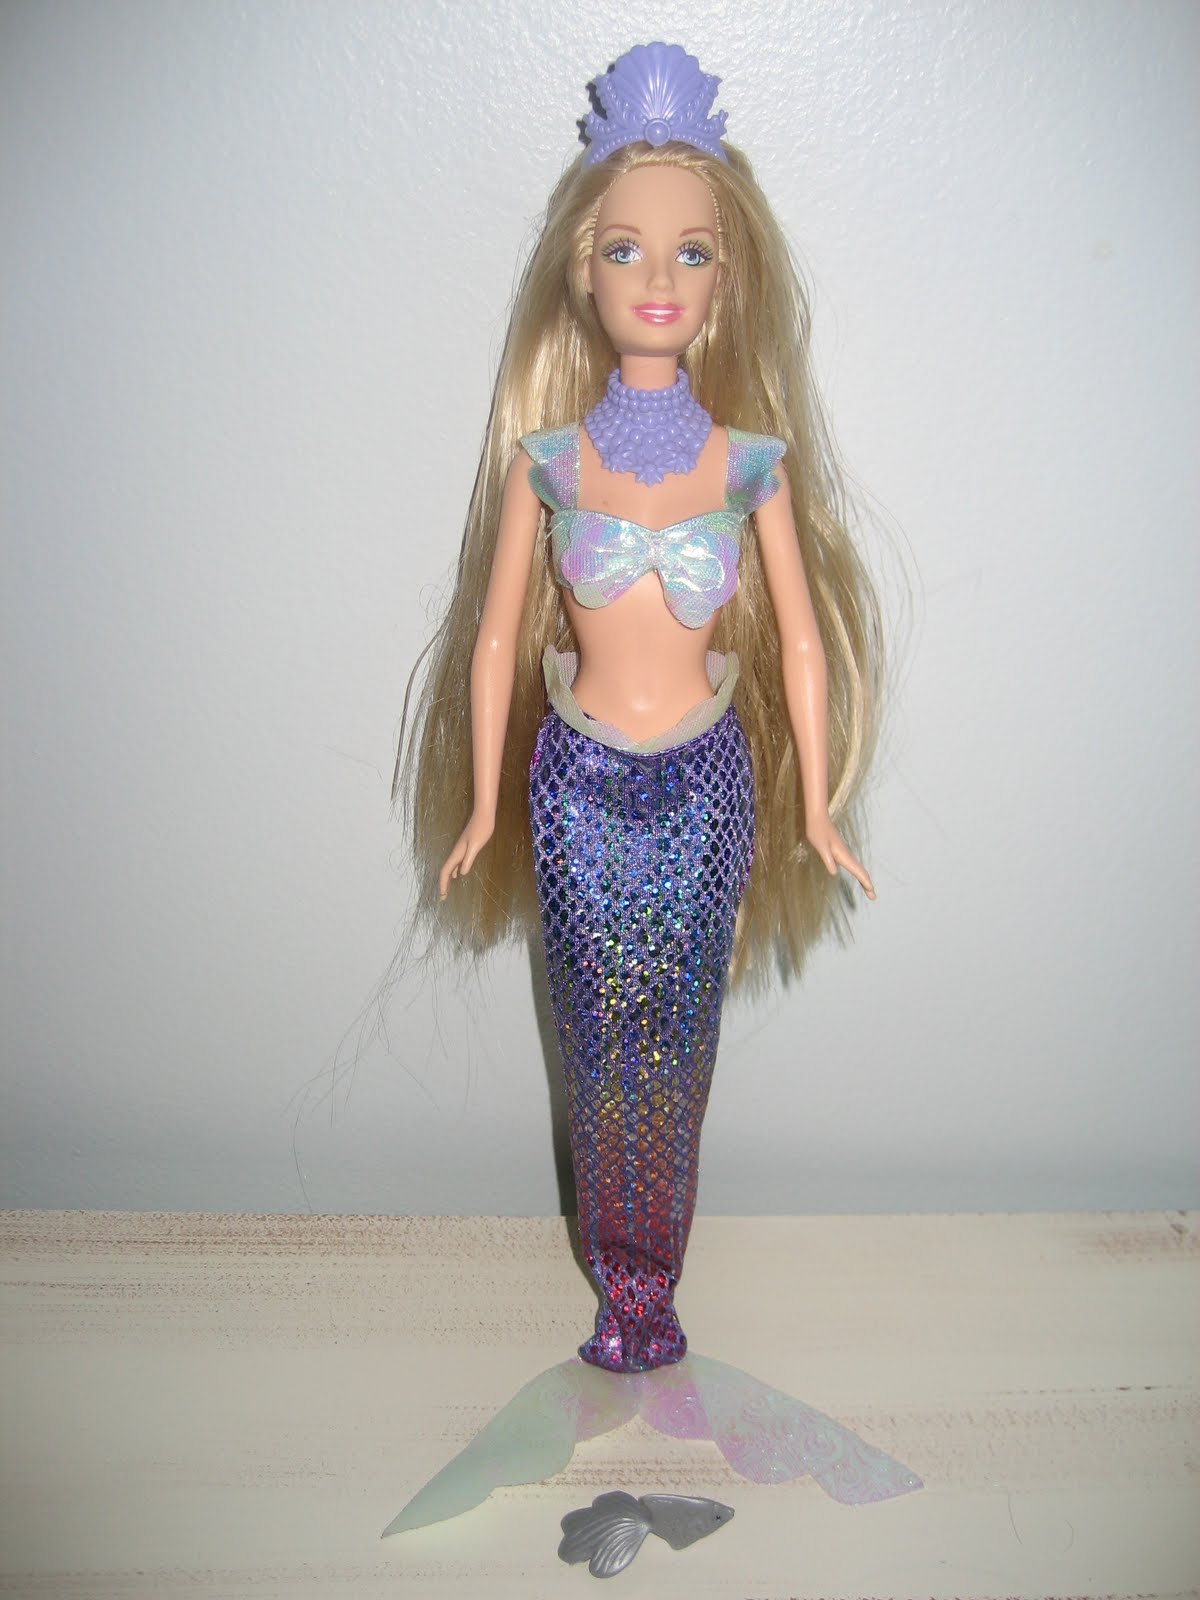 mermaid fashion4